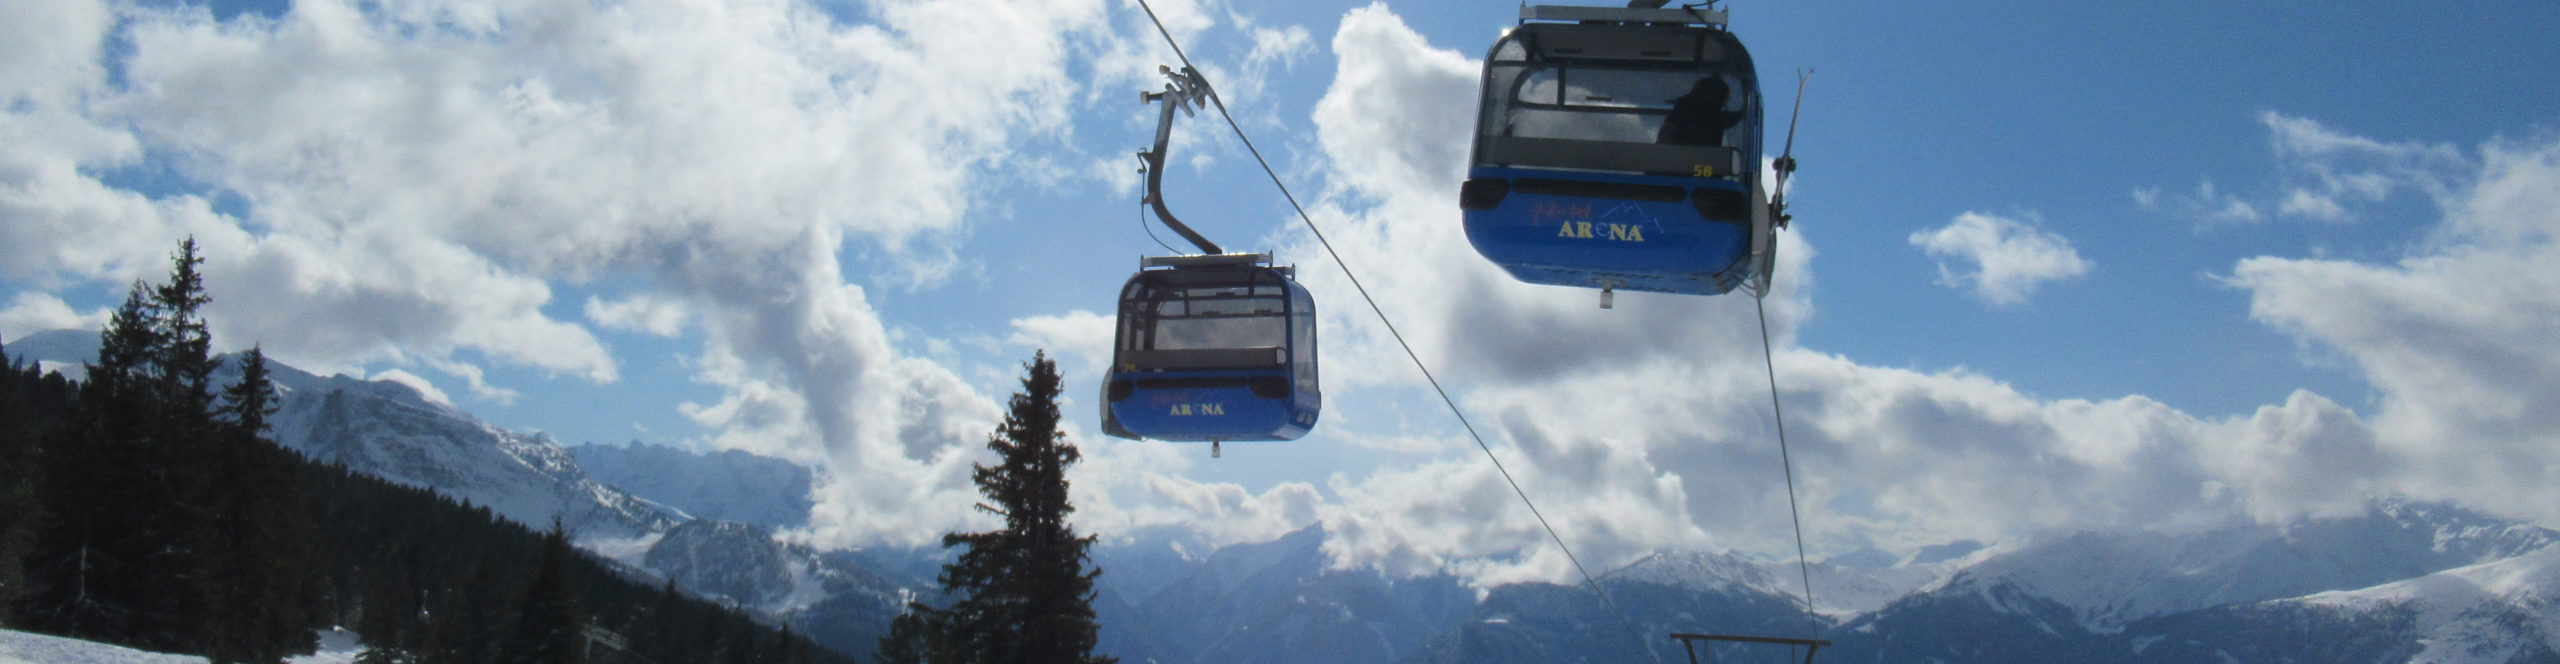 ZILLERTAL – Skiwochenende ab Donnerstag Nachmittag – 3 Skitage – Skisafari Mayrhofen & Kaltenbach 